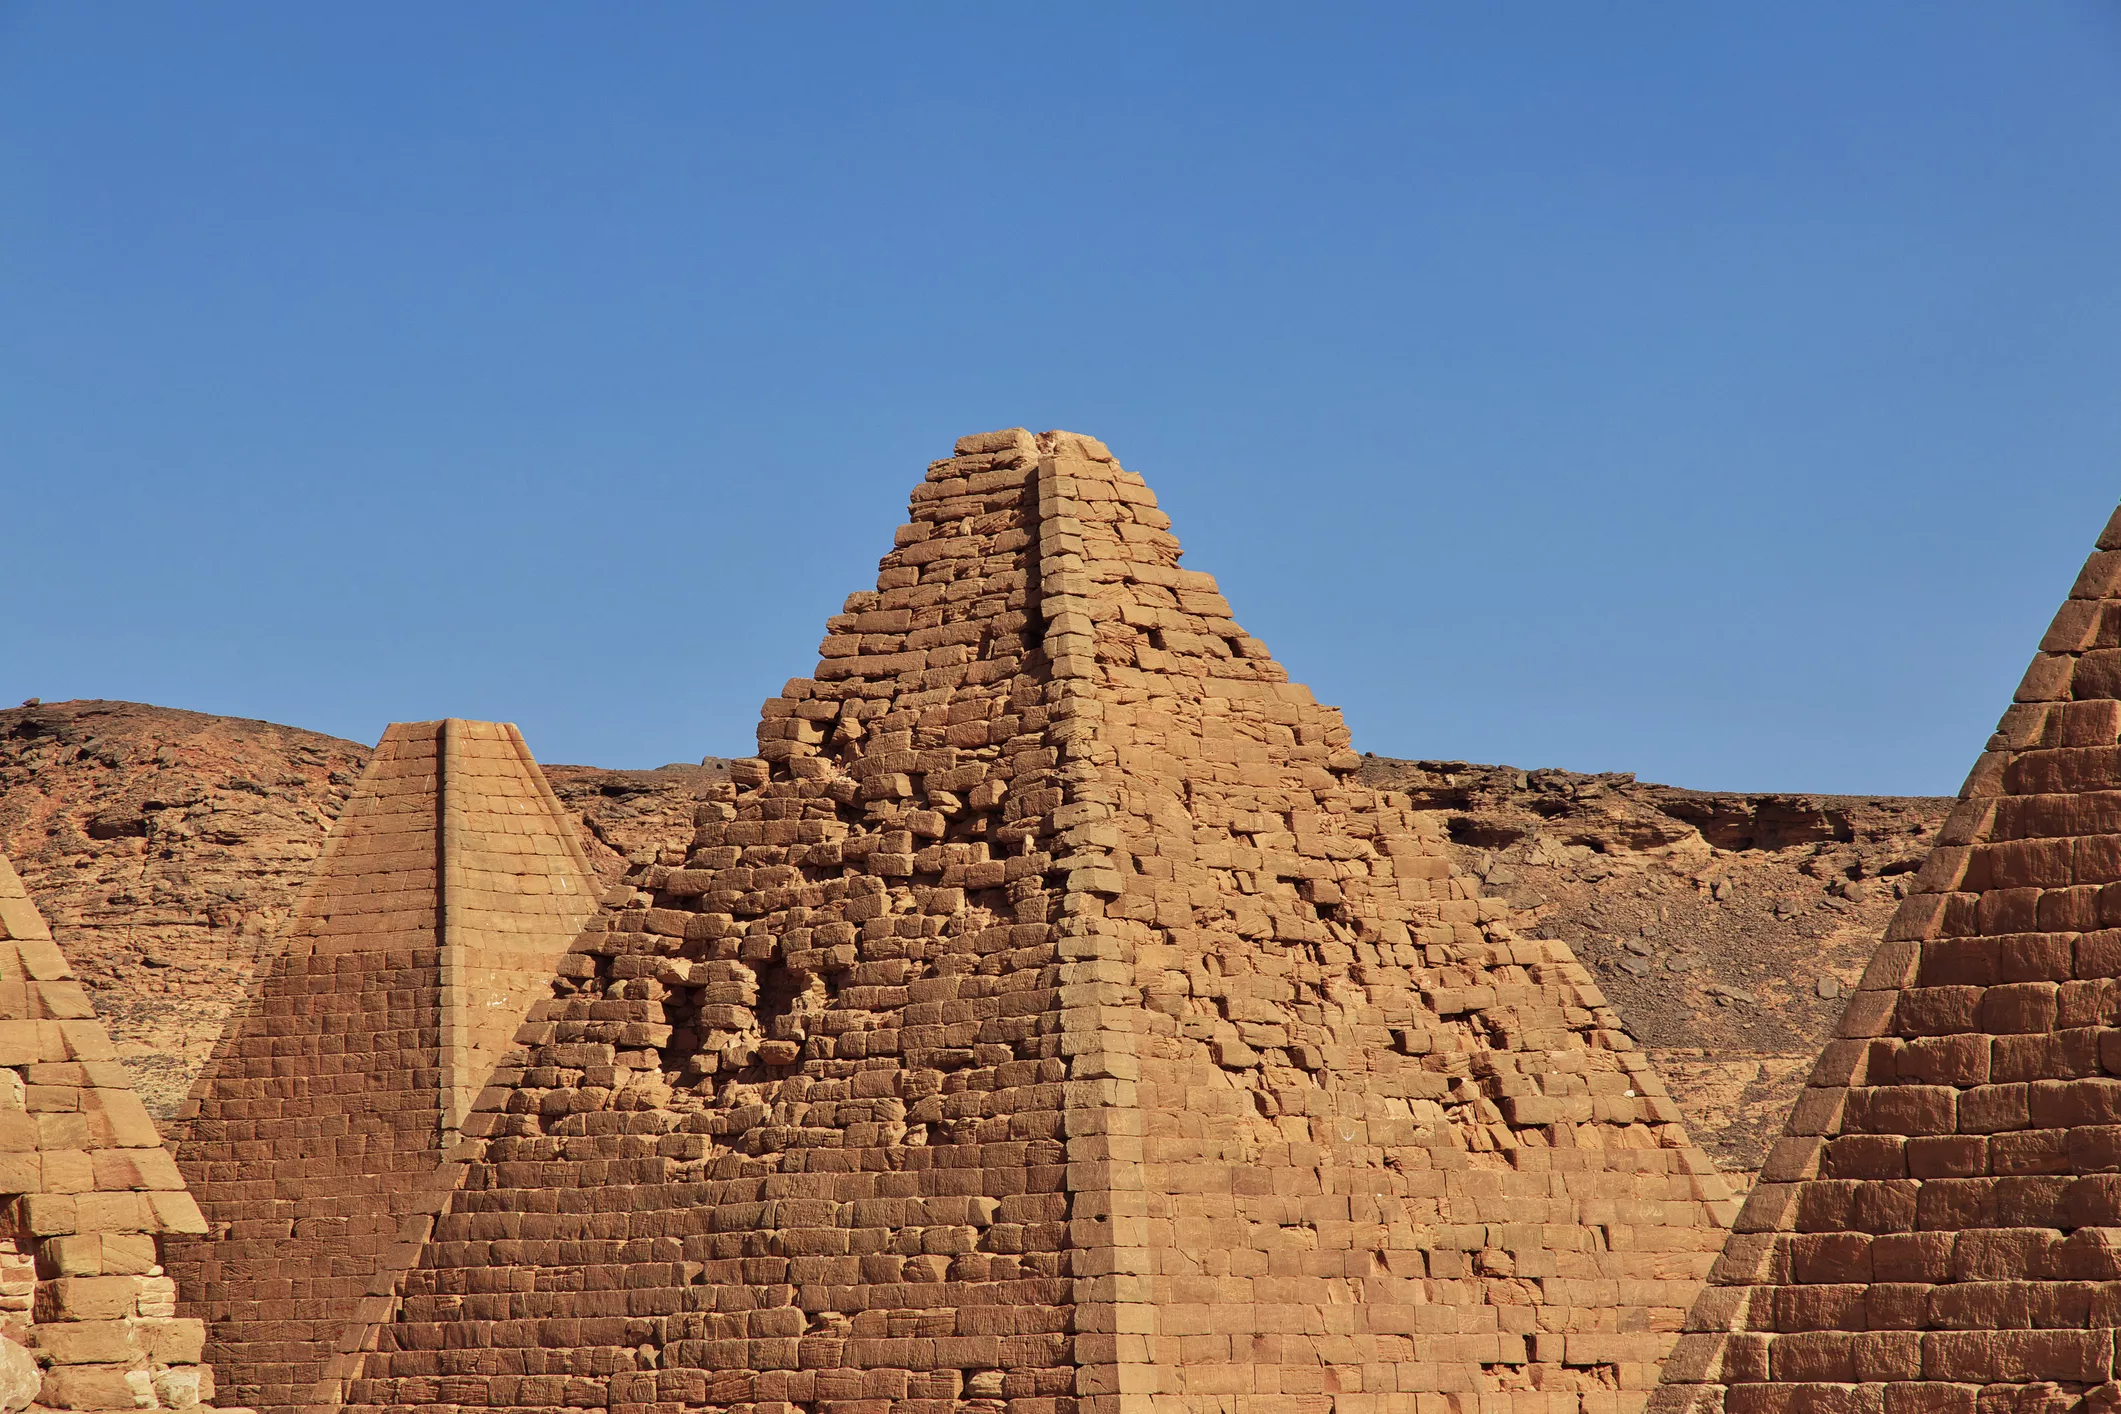 Una de les piràmides de Djebel Barkal amagava un sostre astronòmic: un planetari molt semblant al del temple funerari egipci de Hatshepsut